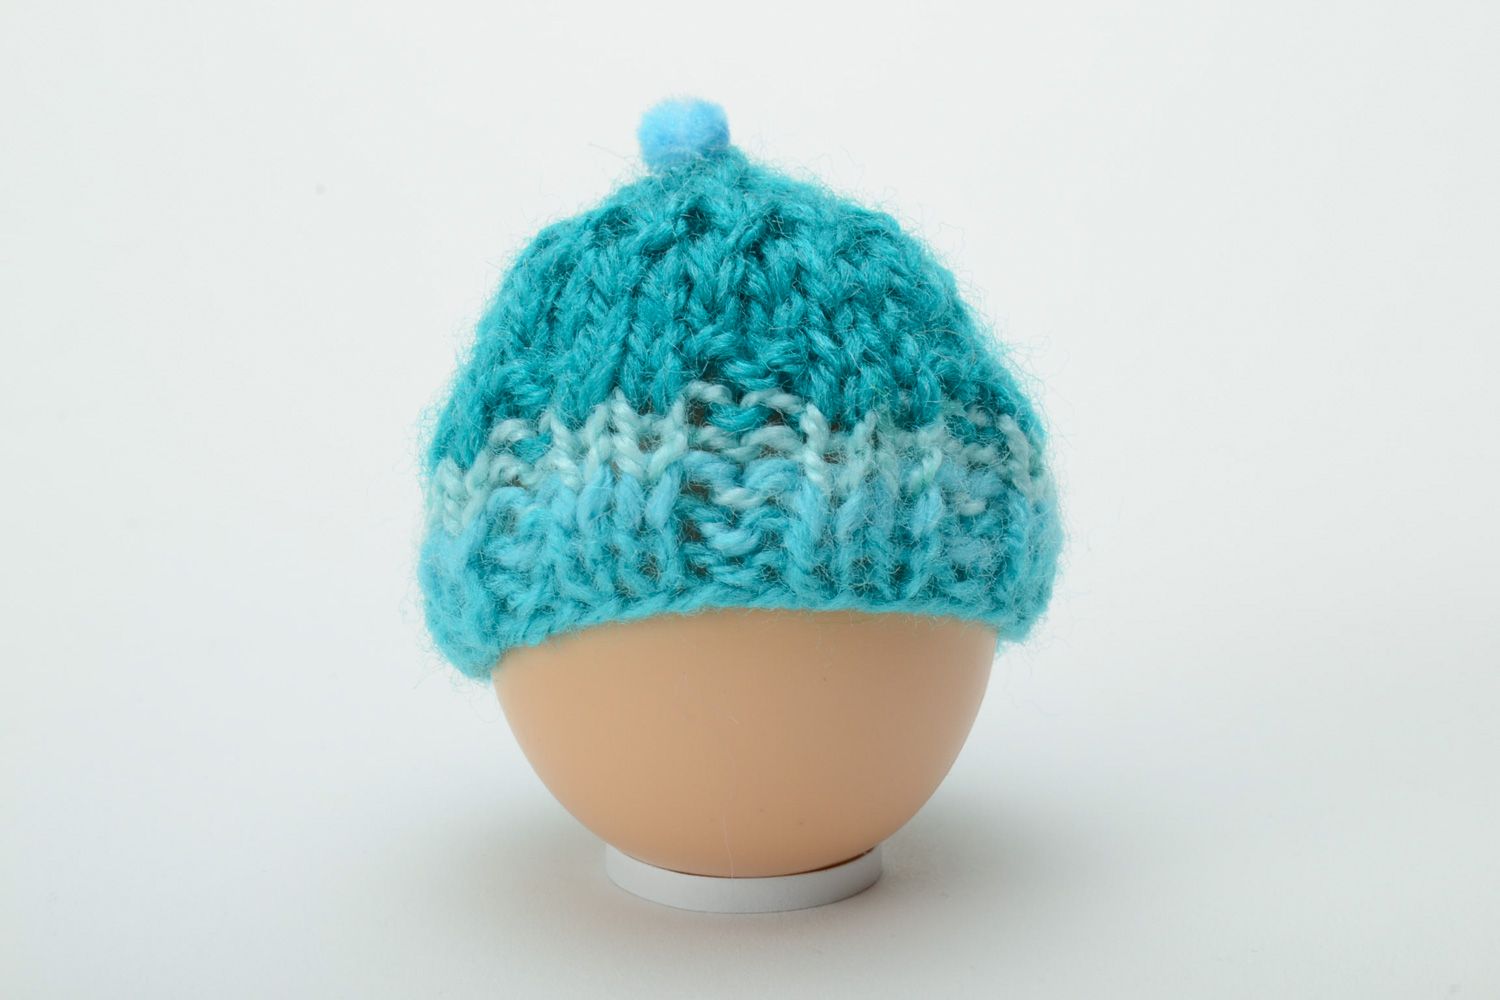 Handmade crochet egg cozy for Easter decor photo 2